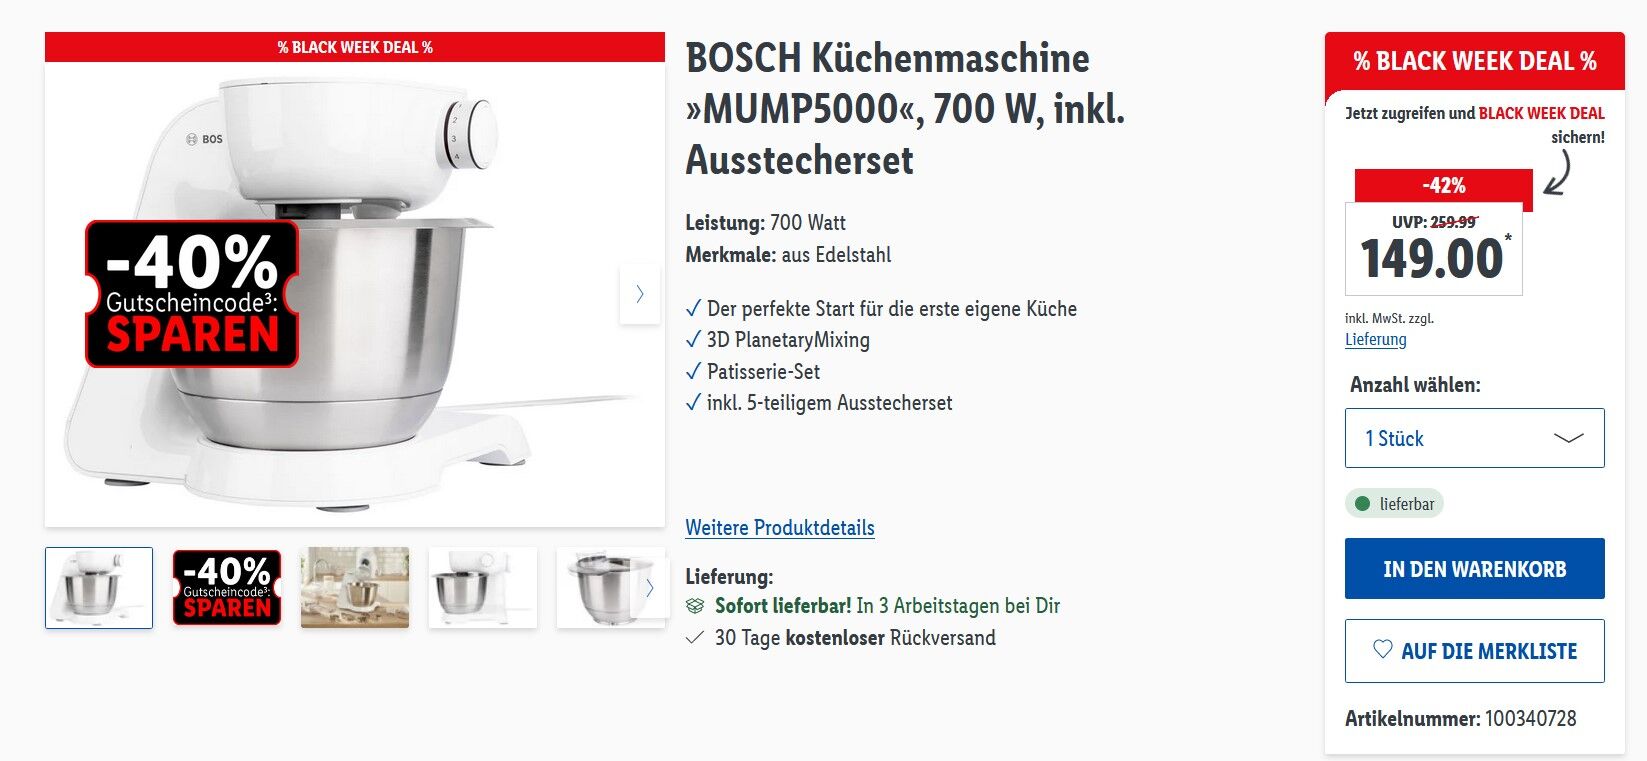 BOSCH Küchenmaschine für 95,35€ »MUMP5000« inkl. Ausstecherset